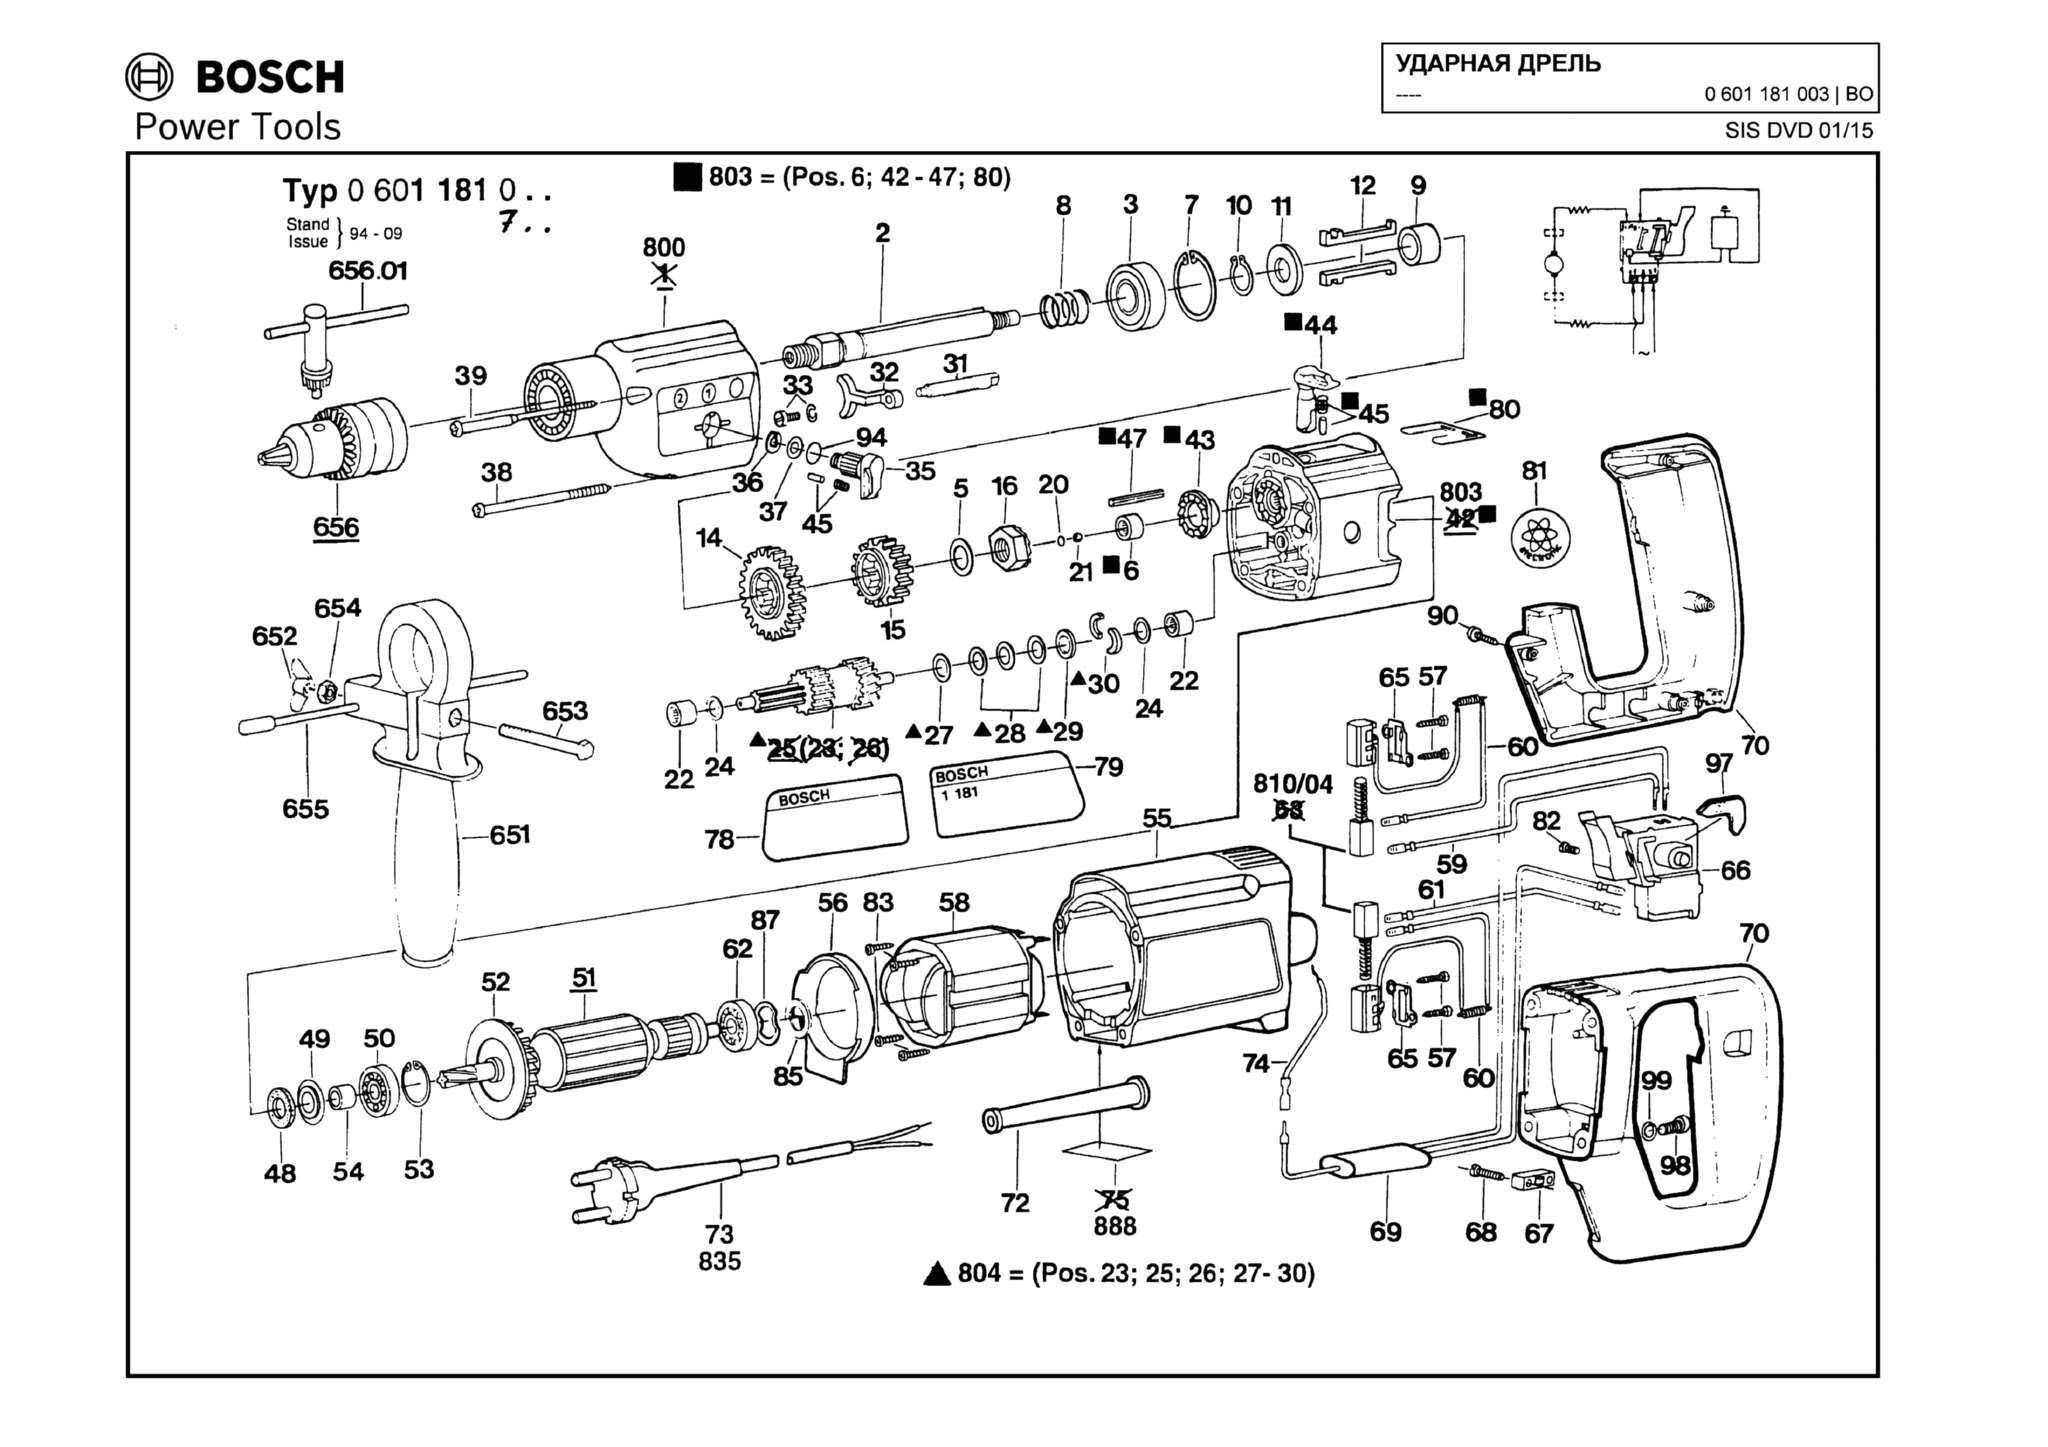 Запчасти, схема и деталировка Bosch (ТИП 0601181003)